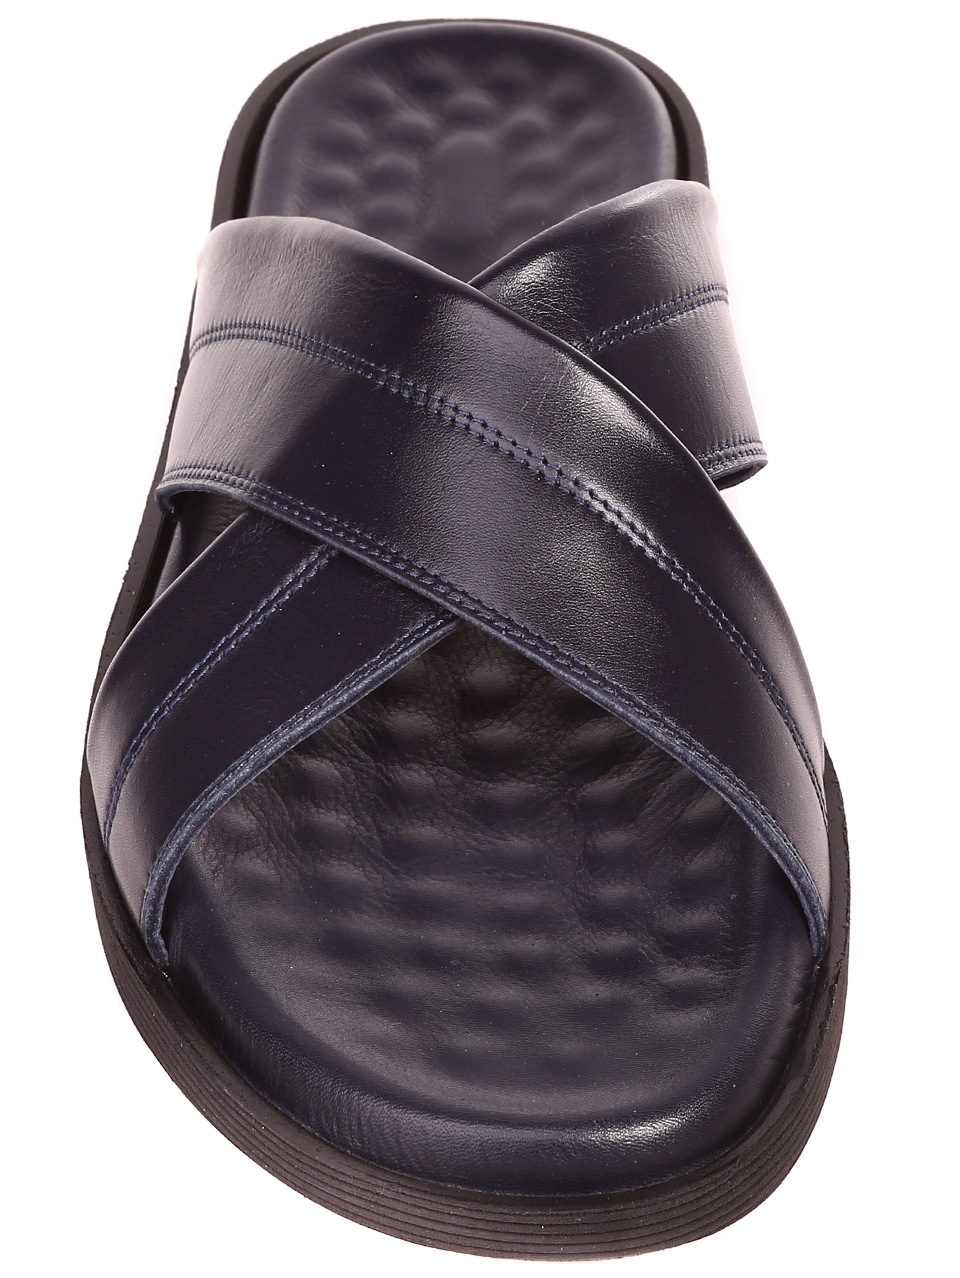 Ежедневни мъжки чехли от естествена кожа в цвят нави 8AT-23317 black/navy